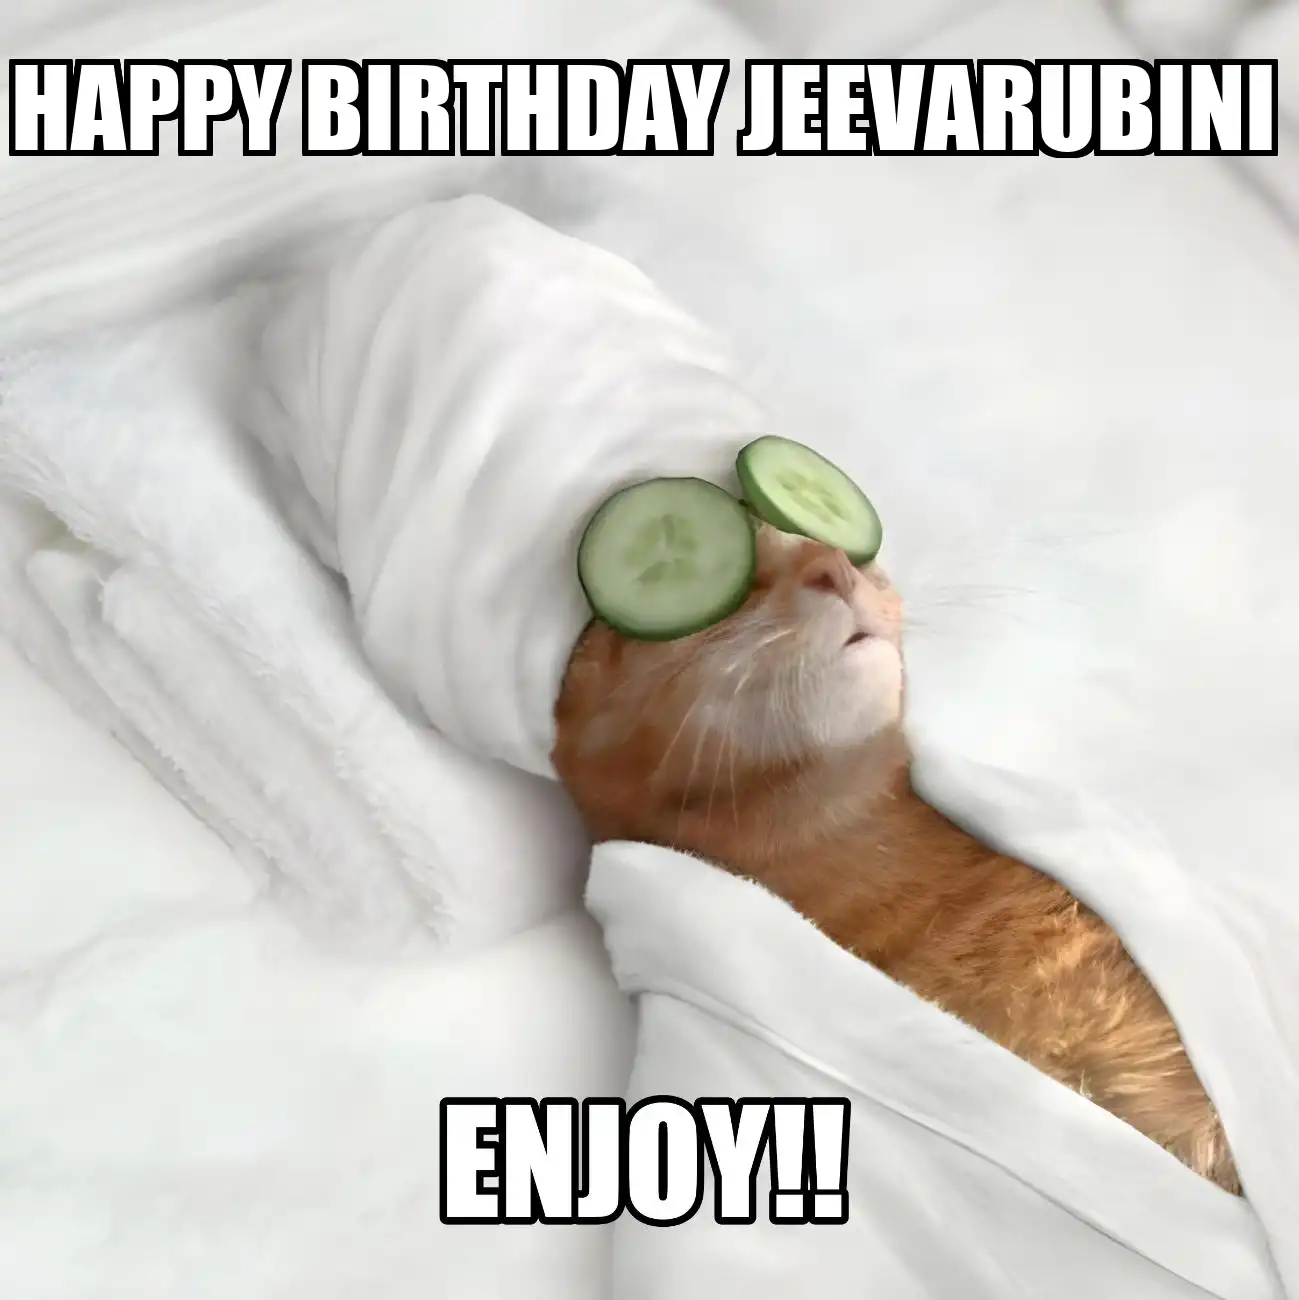 Happy Birthday Jeevarubini Enjoy Cat Meme